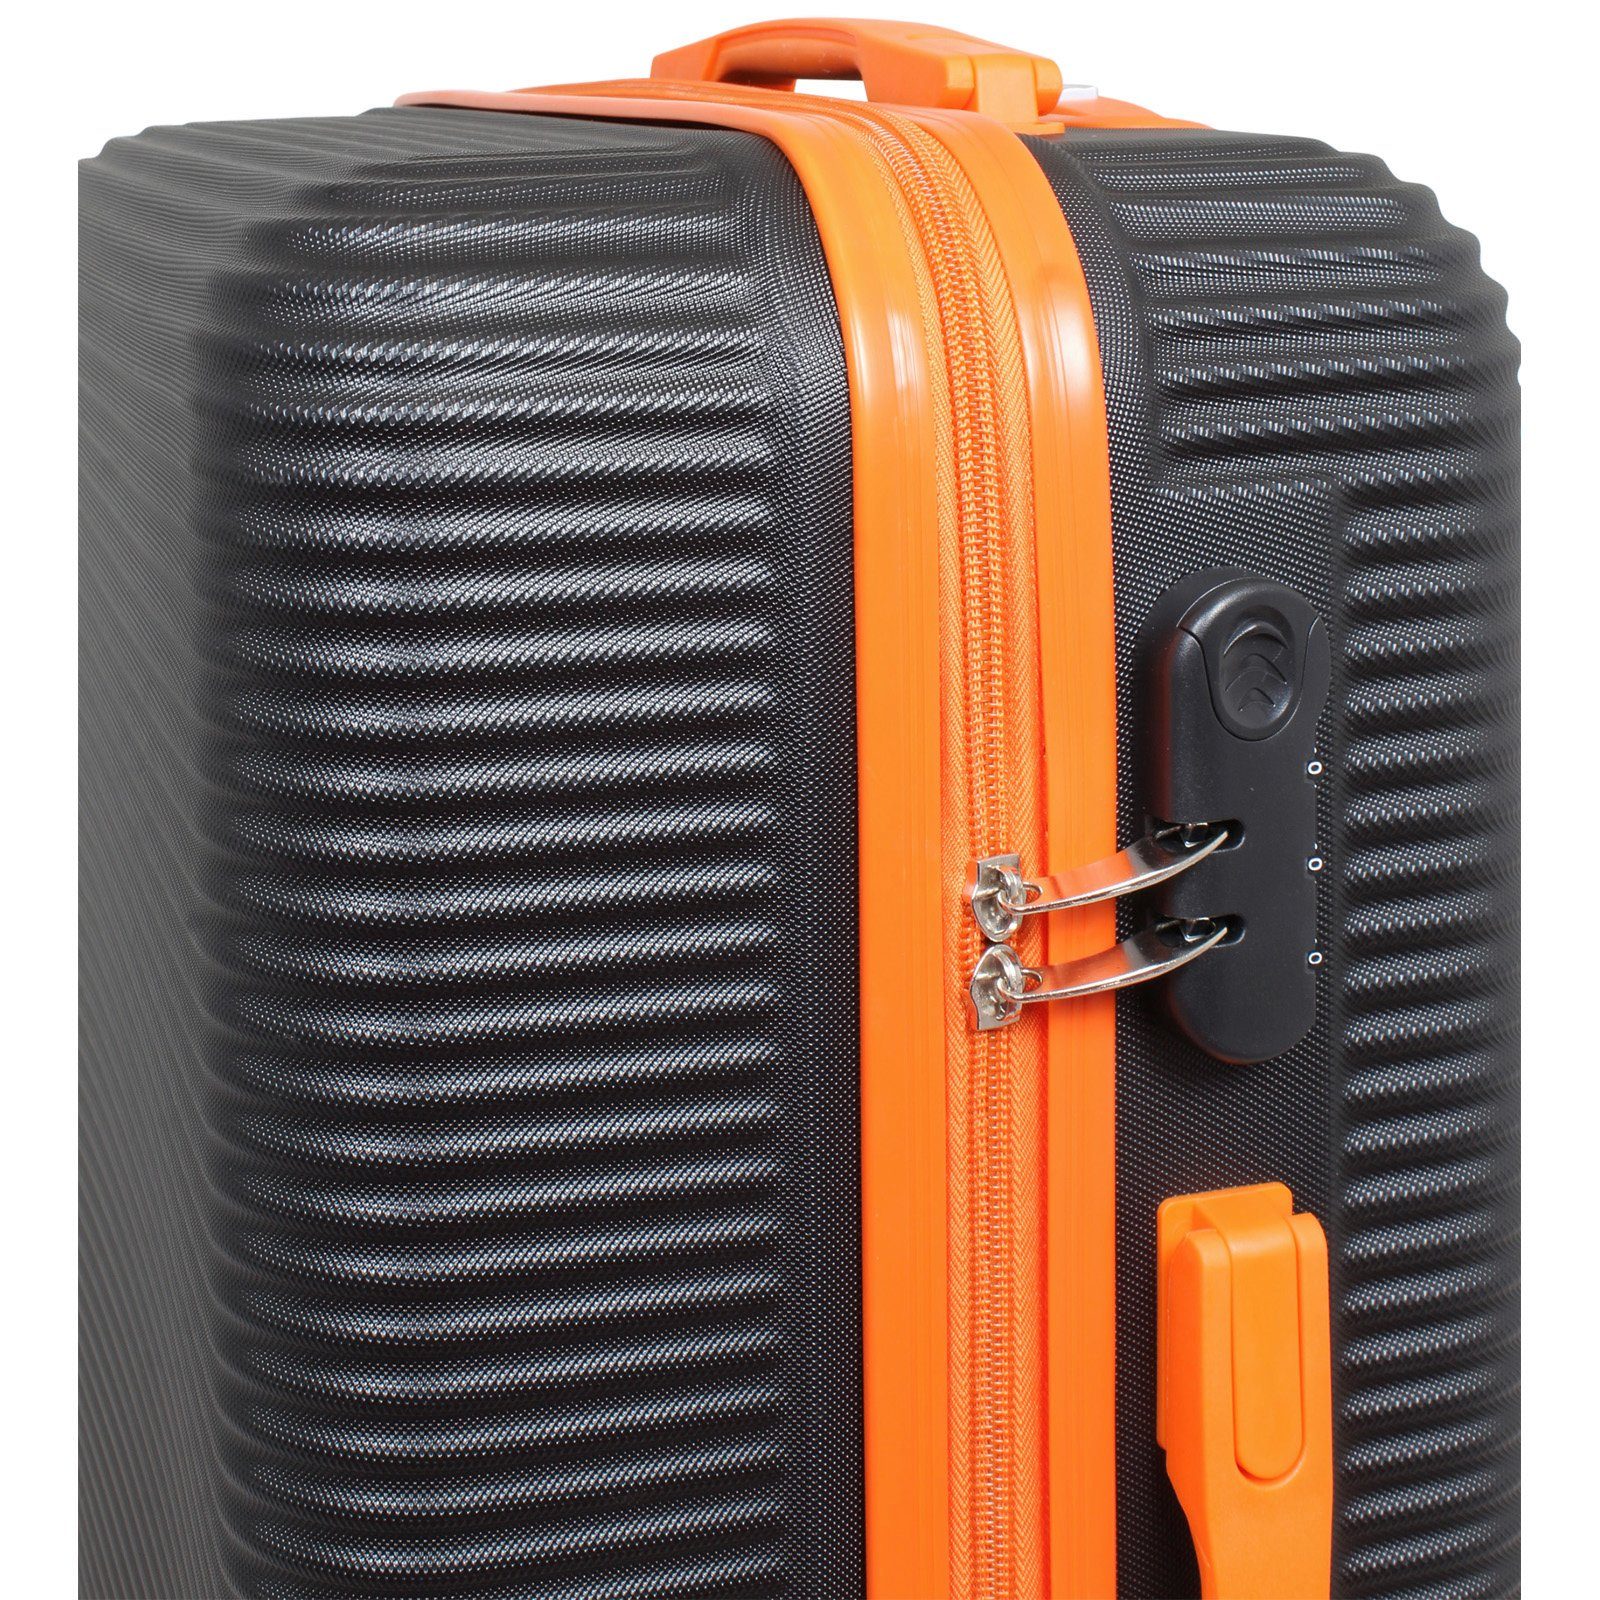 Hartschale 3 Santorin, 4 Trendyshop365 robust Kofferset tlg., schwarz-orange (ABS), (Trolley, 2 Zahlenschloss, und Rollen, leicht Zwillingsrollen, Tragegriffe,